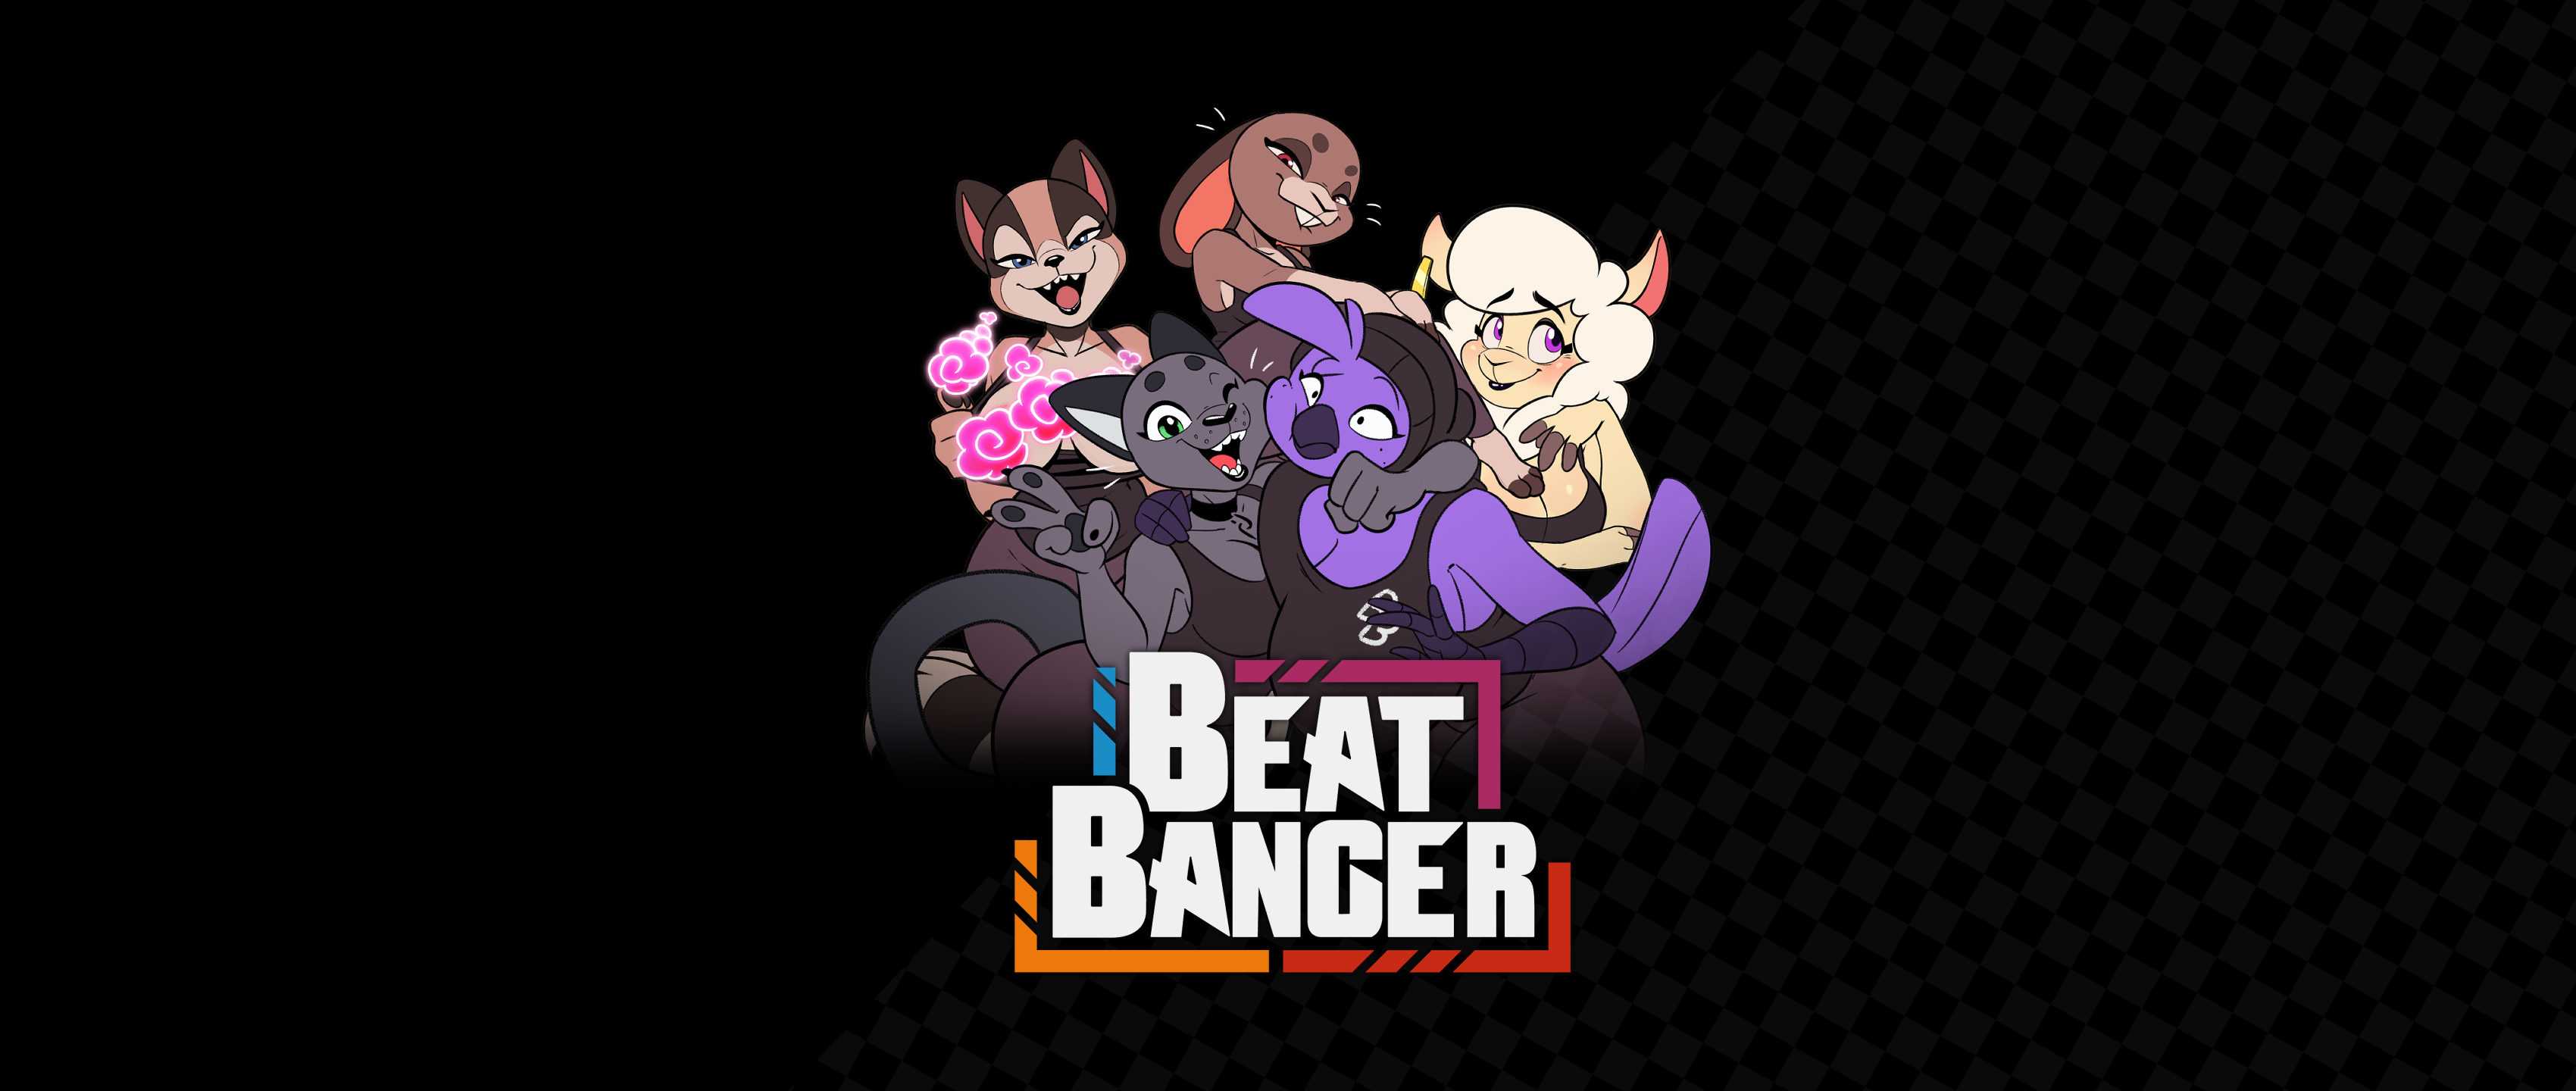 Beat banger discord